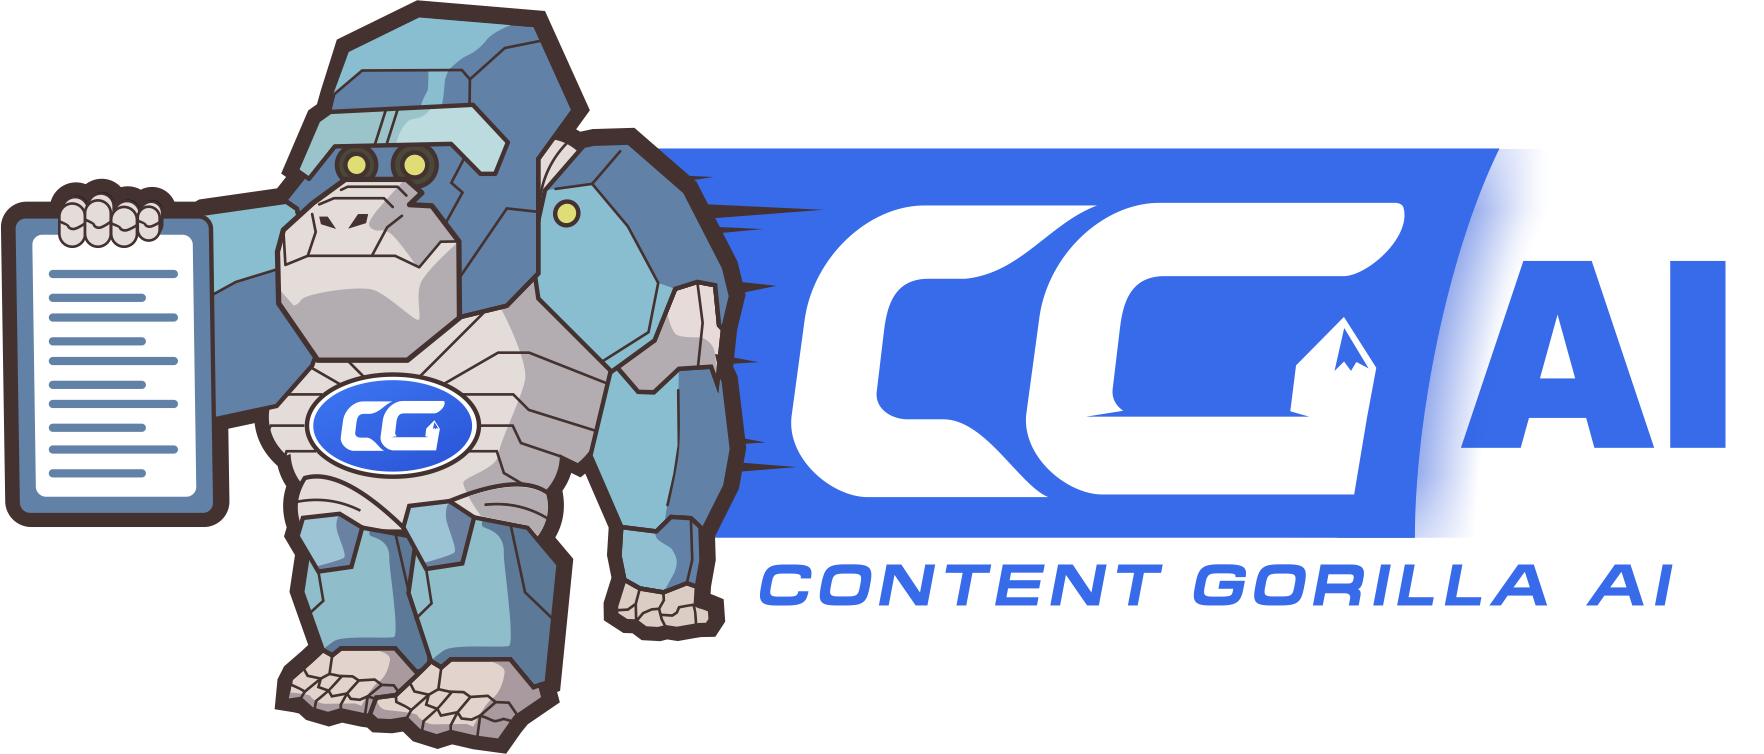 Content Gorilla